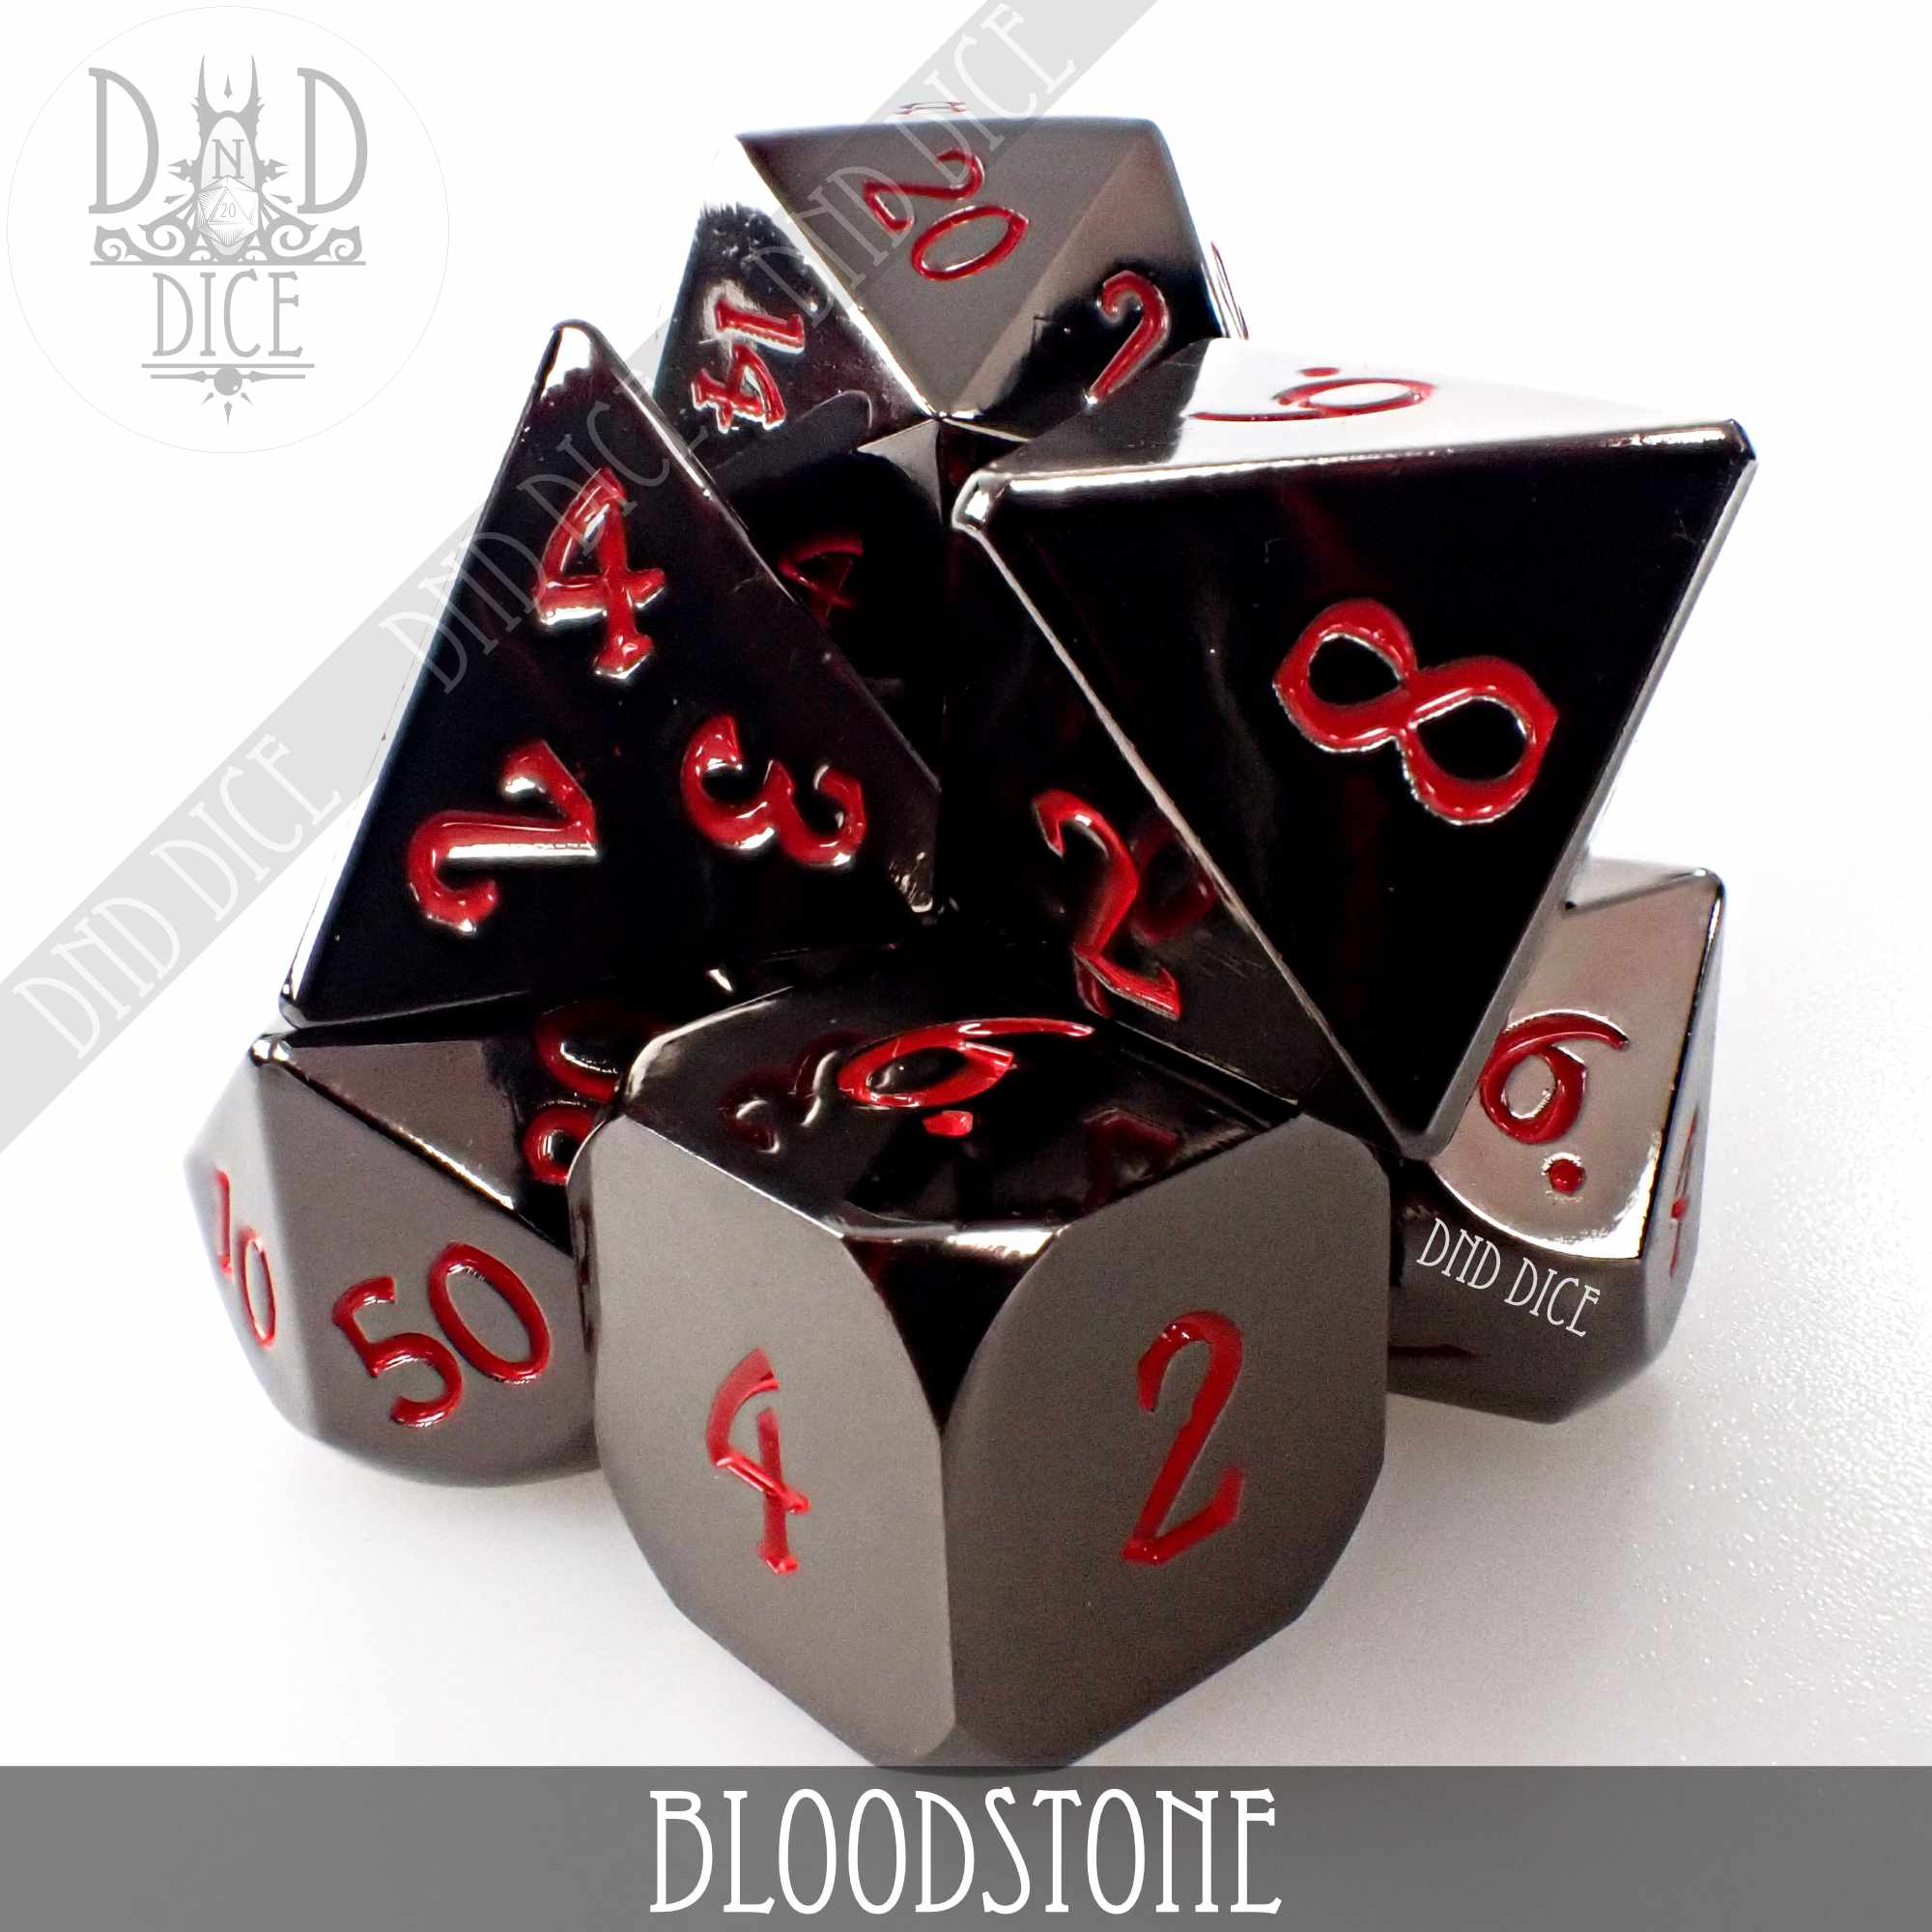 Bloodstone Metal Dice Set